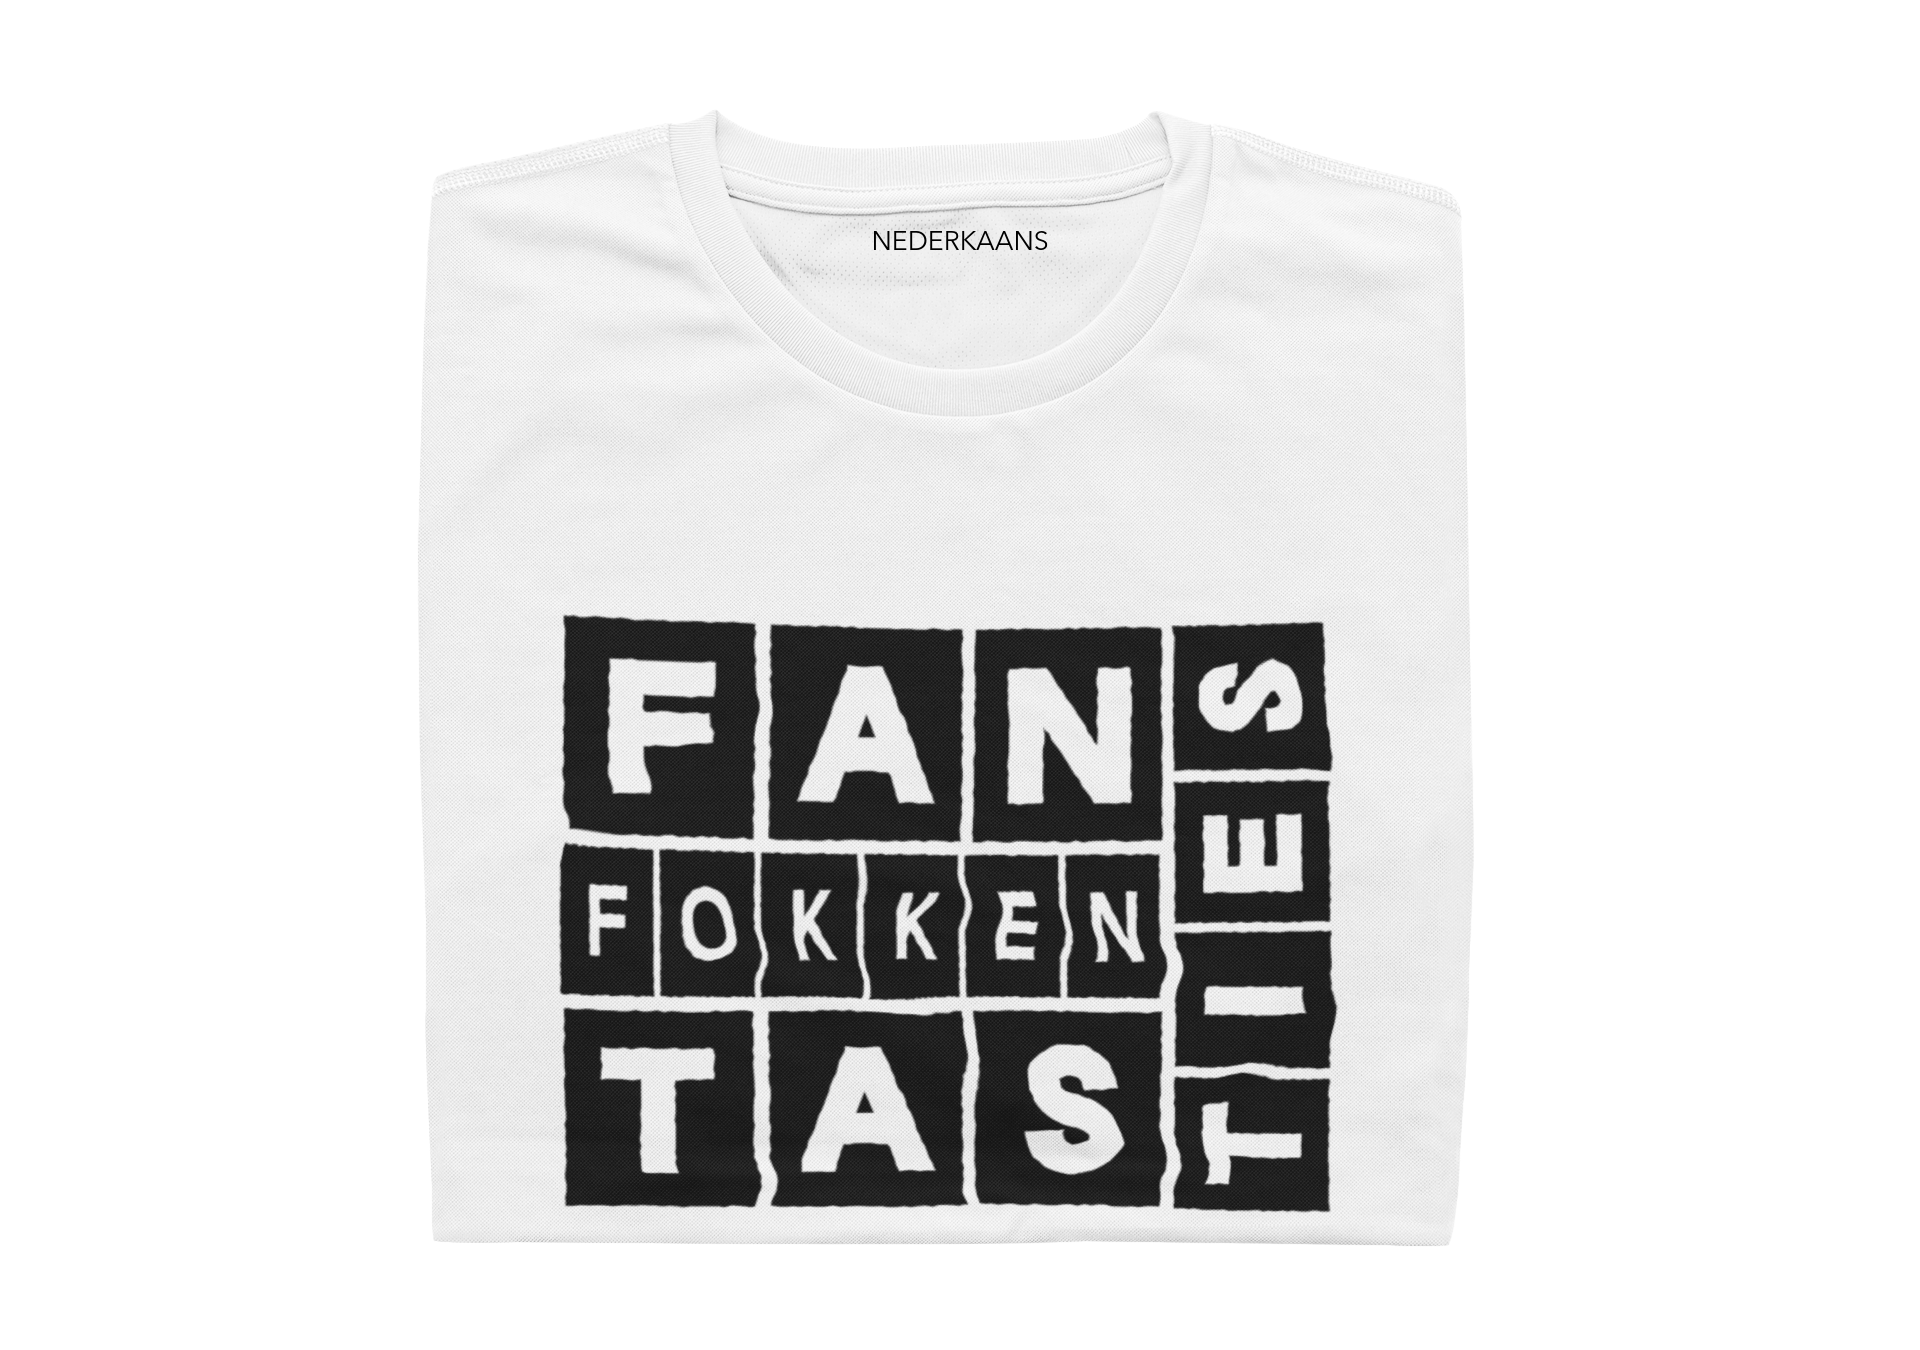 Fan Fokken Tas Ties - Mens Shirt